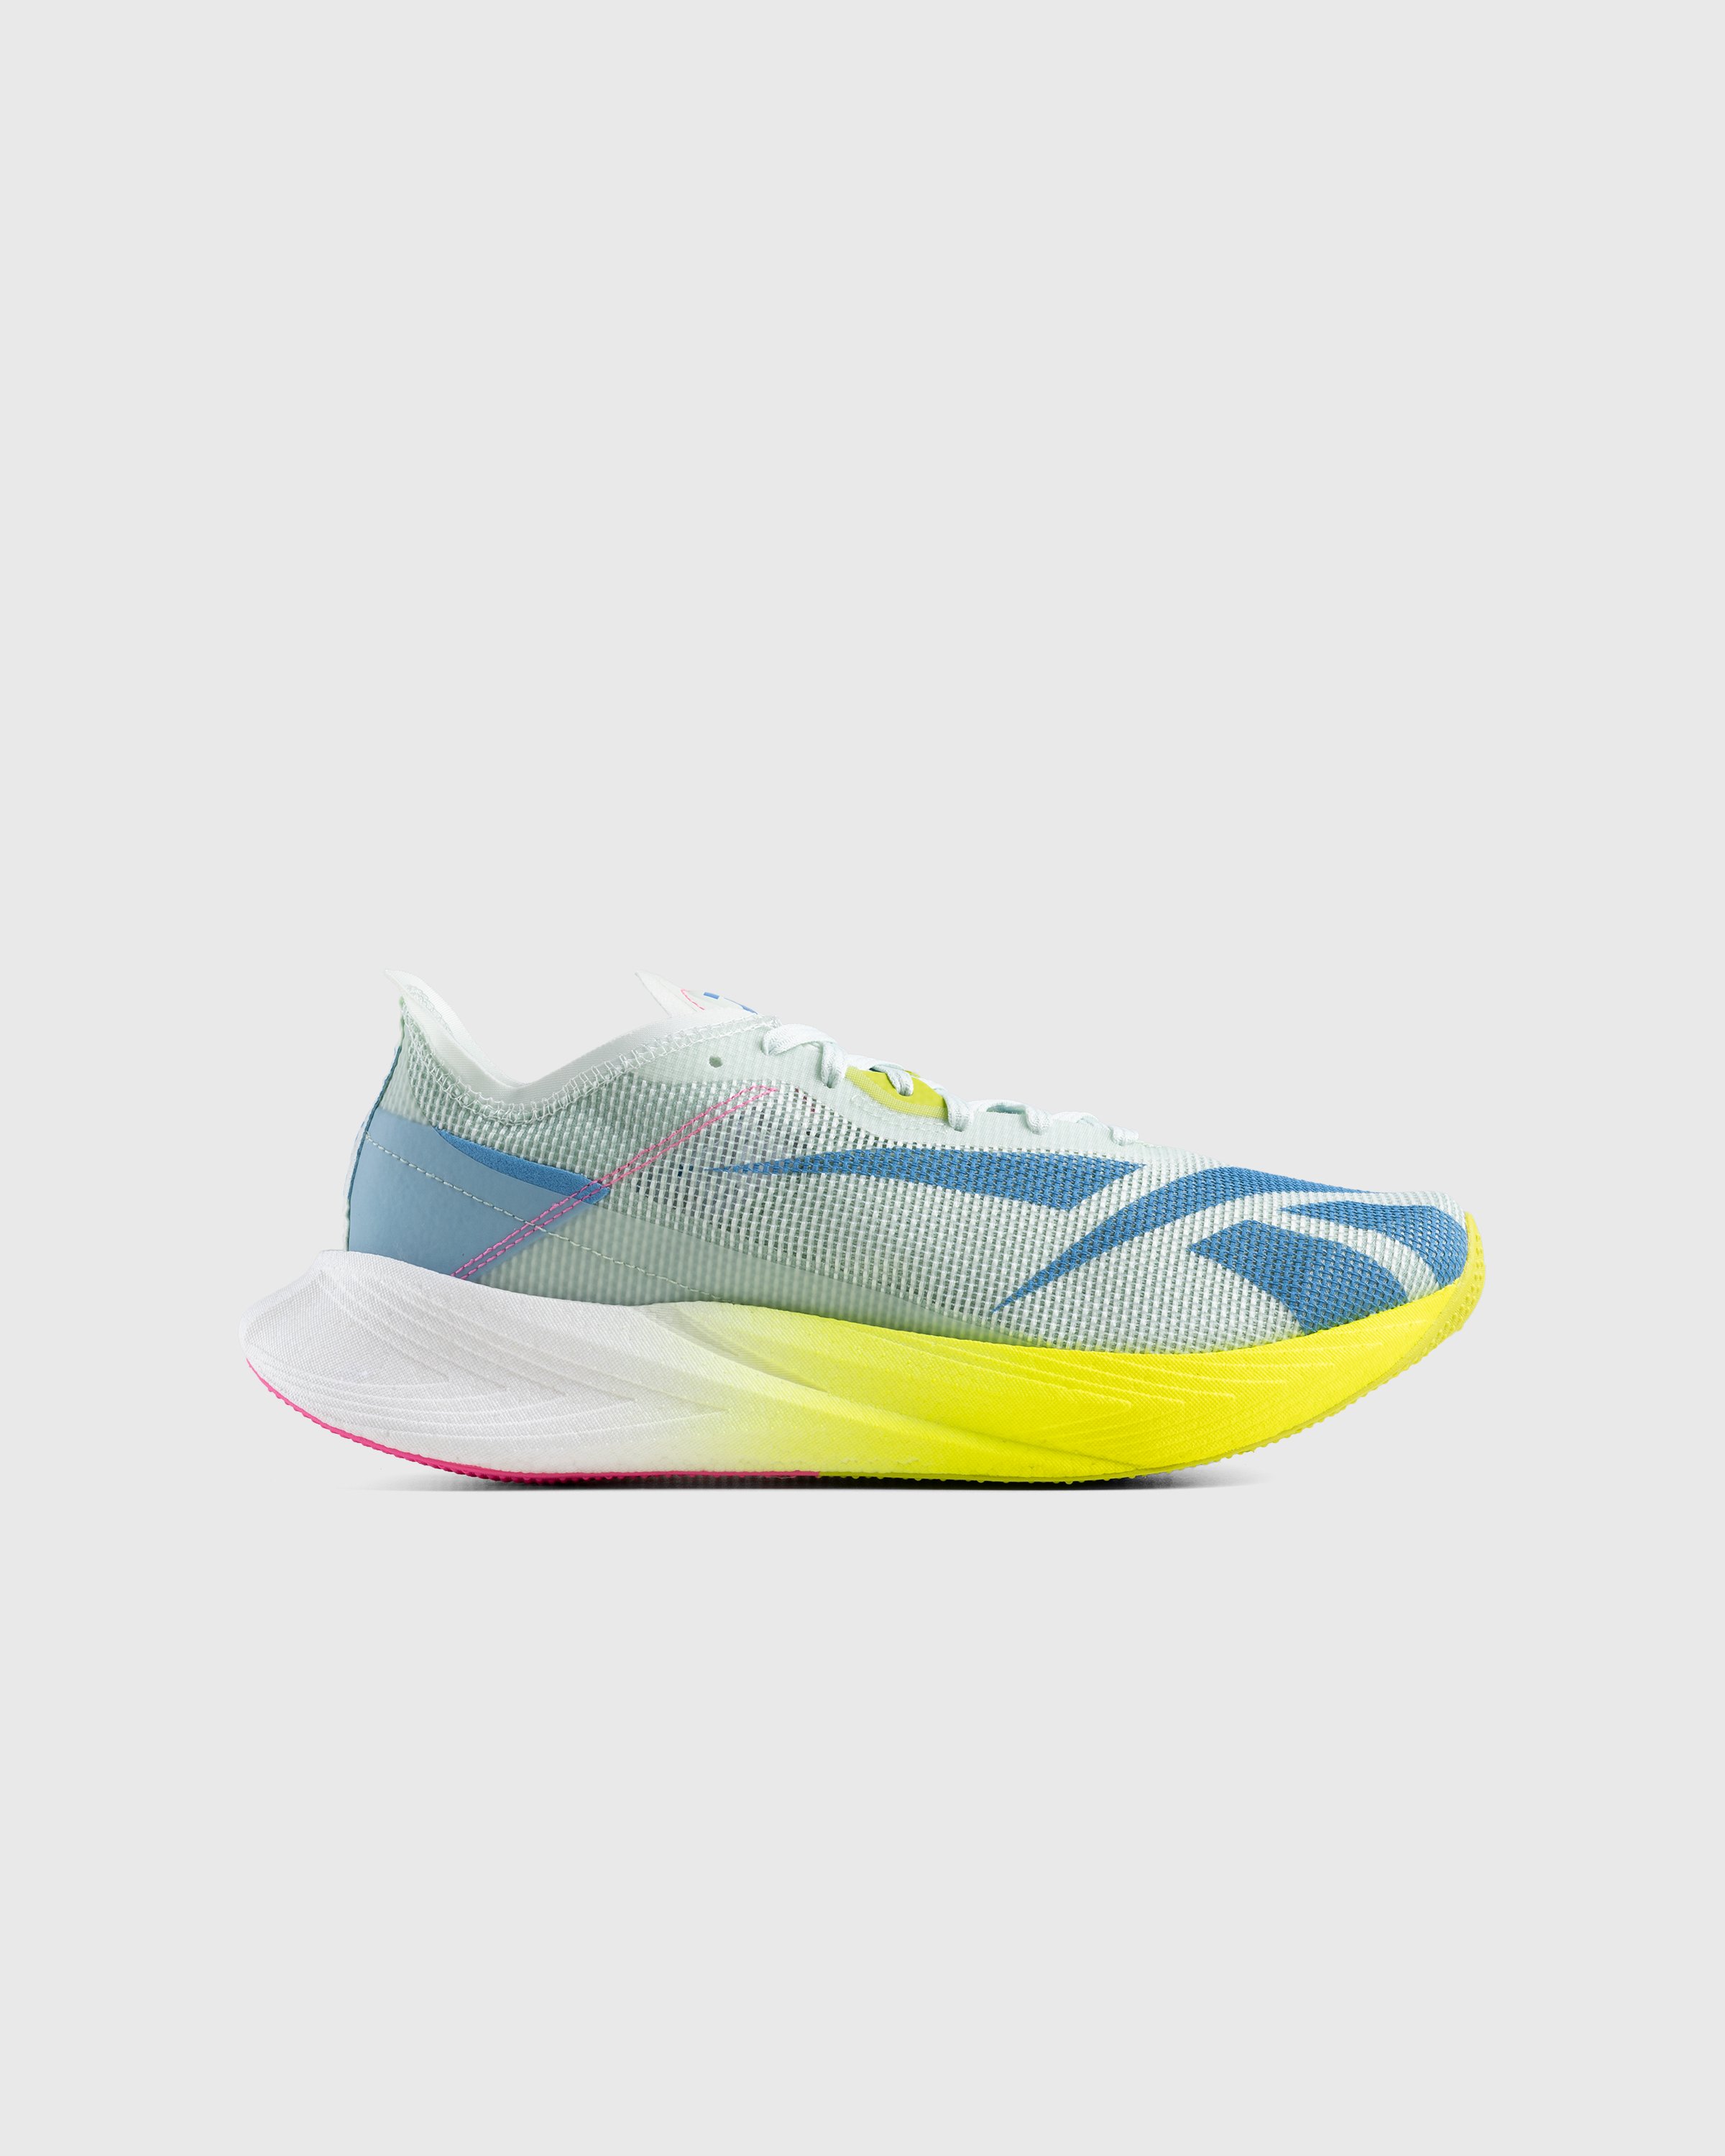 Reebok - Floatride Energy X Yellow/Blue - Footwear - Multi - Image 1